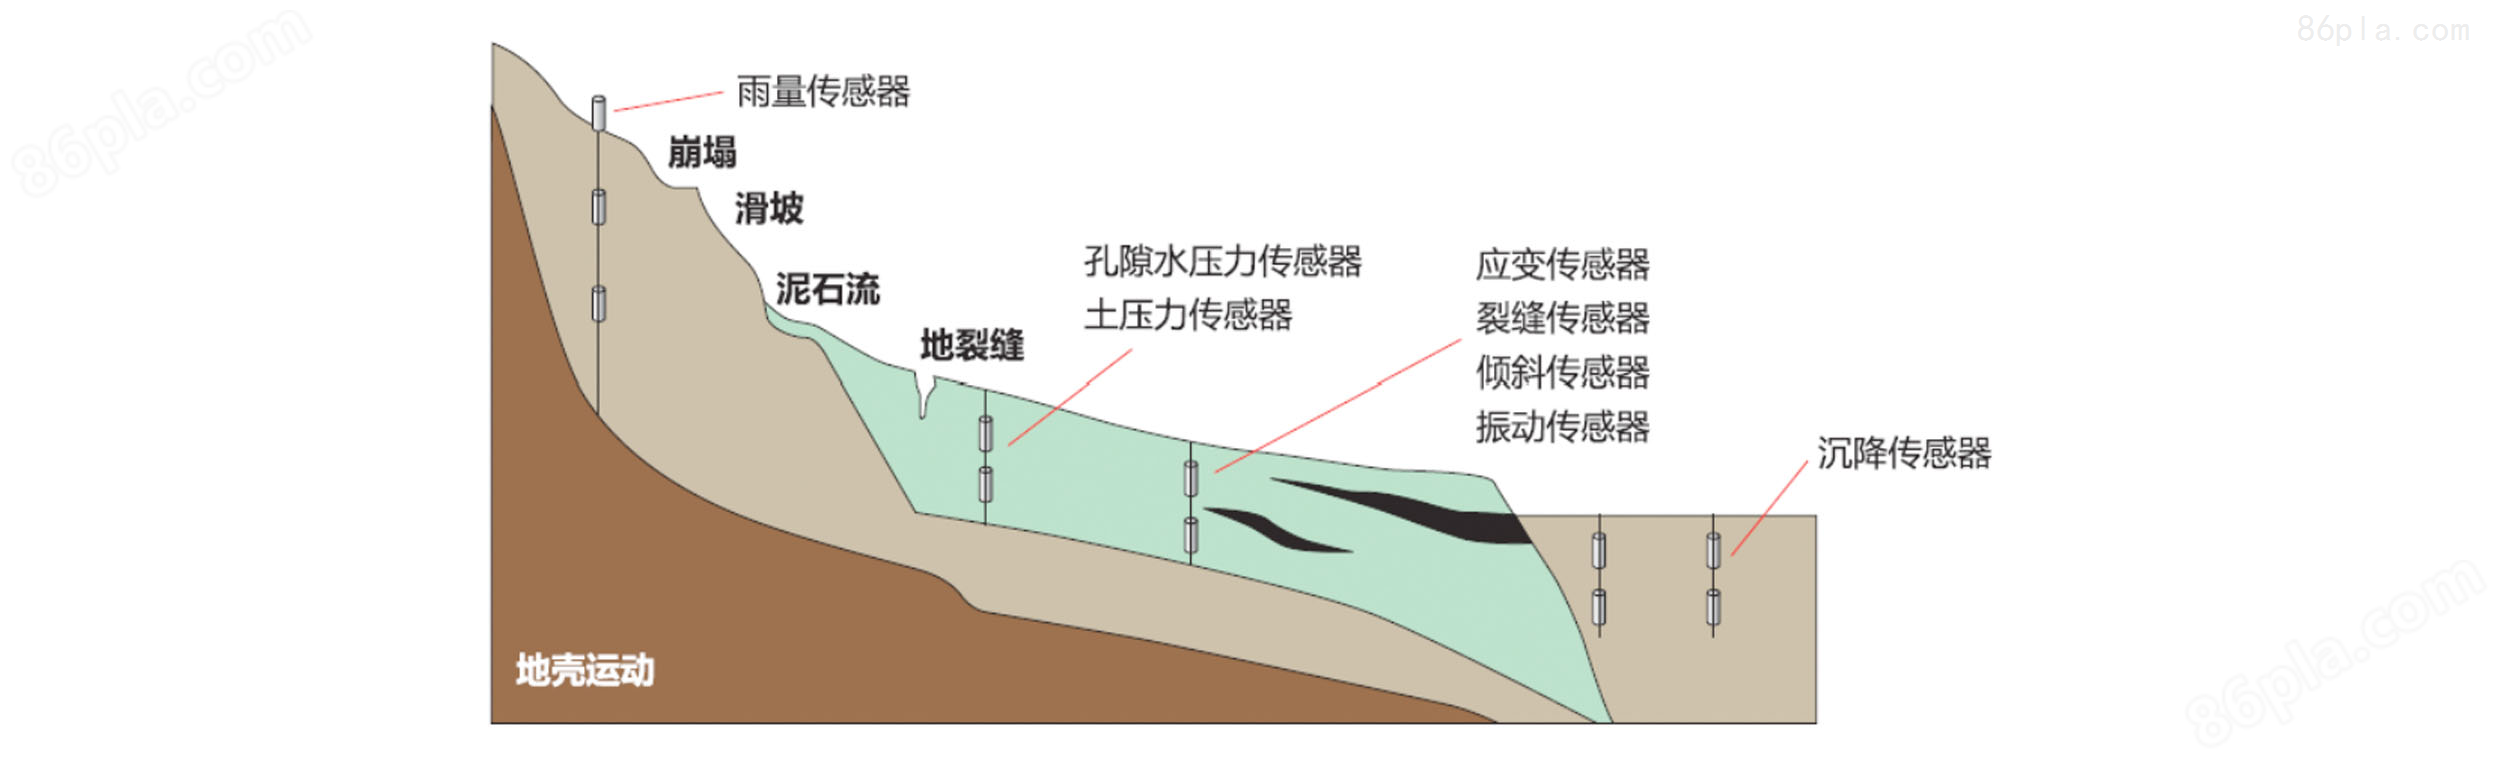 地质灾害滑坡安全监测系统方案